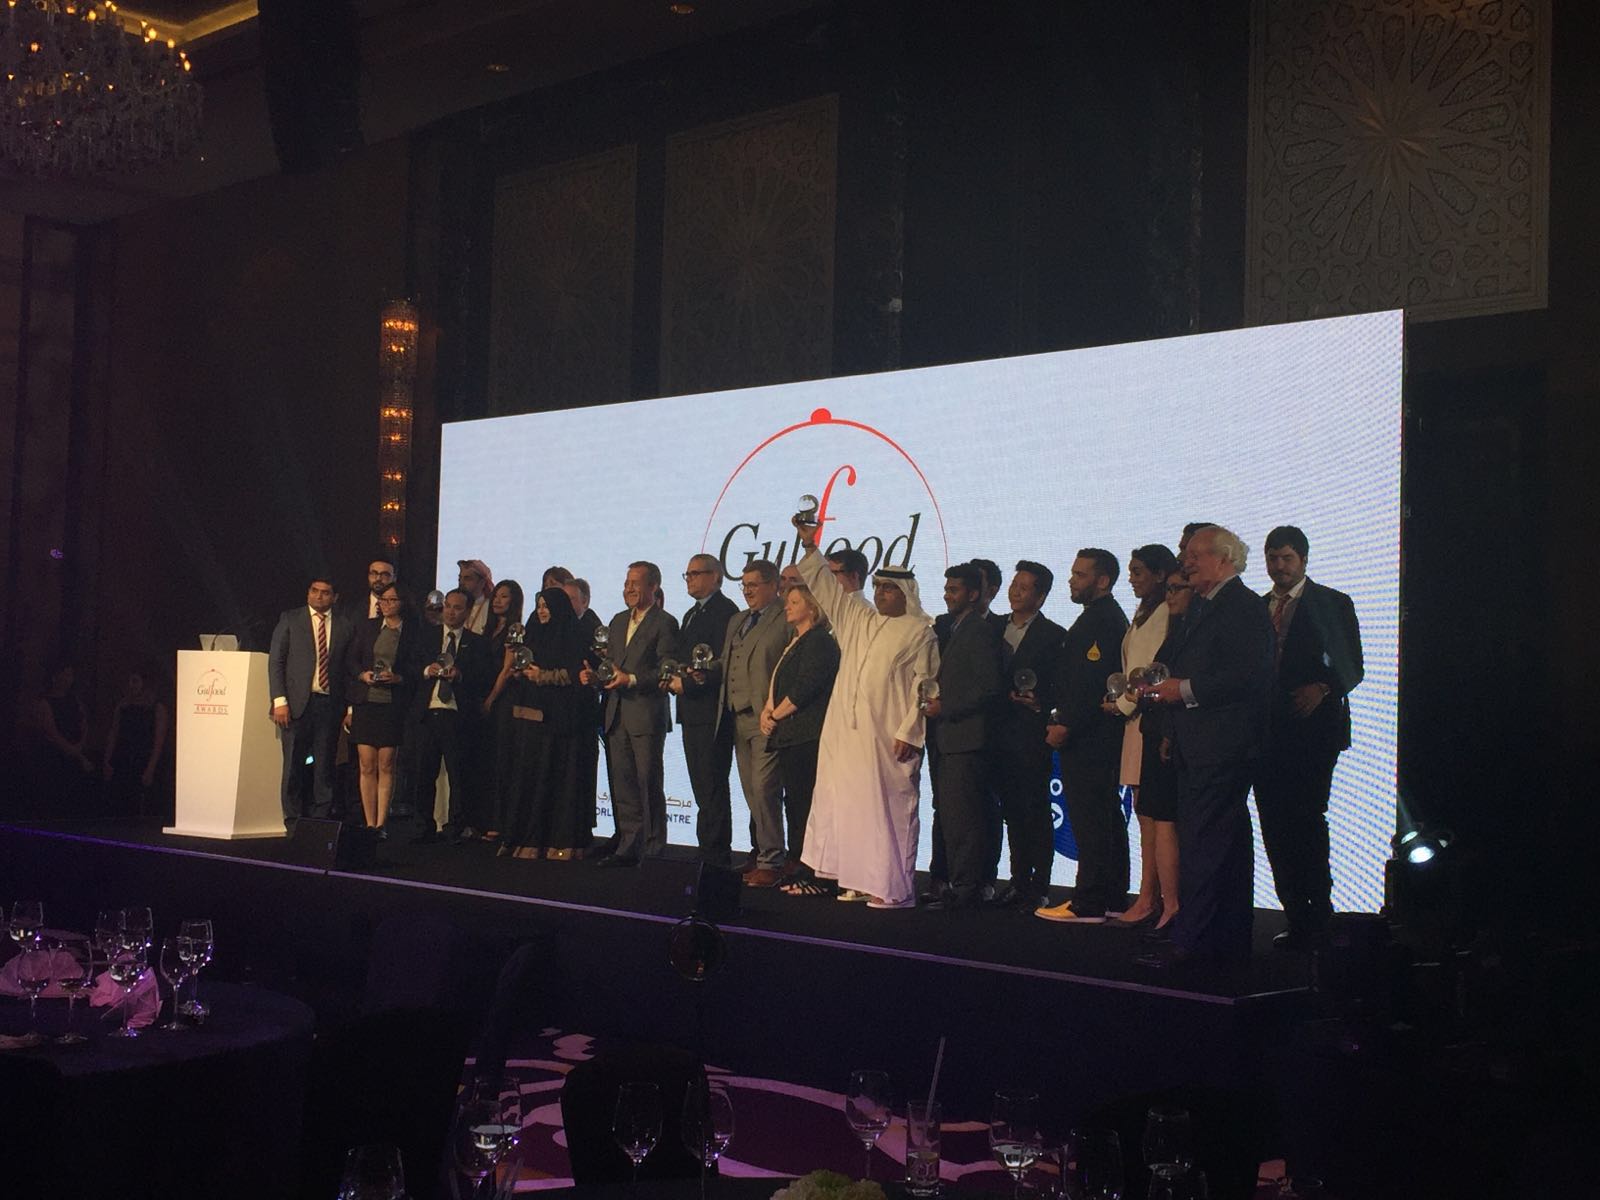 Al Dahra ganó “El Premio a mejor caseta” en ‘Gulfood’ de 2016